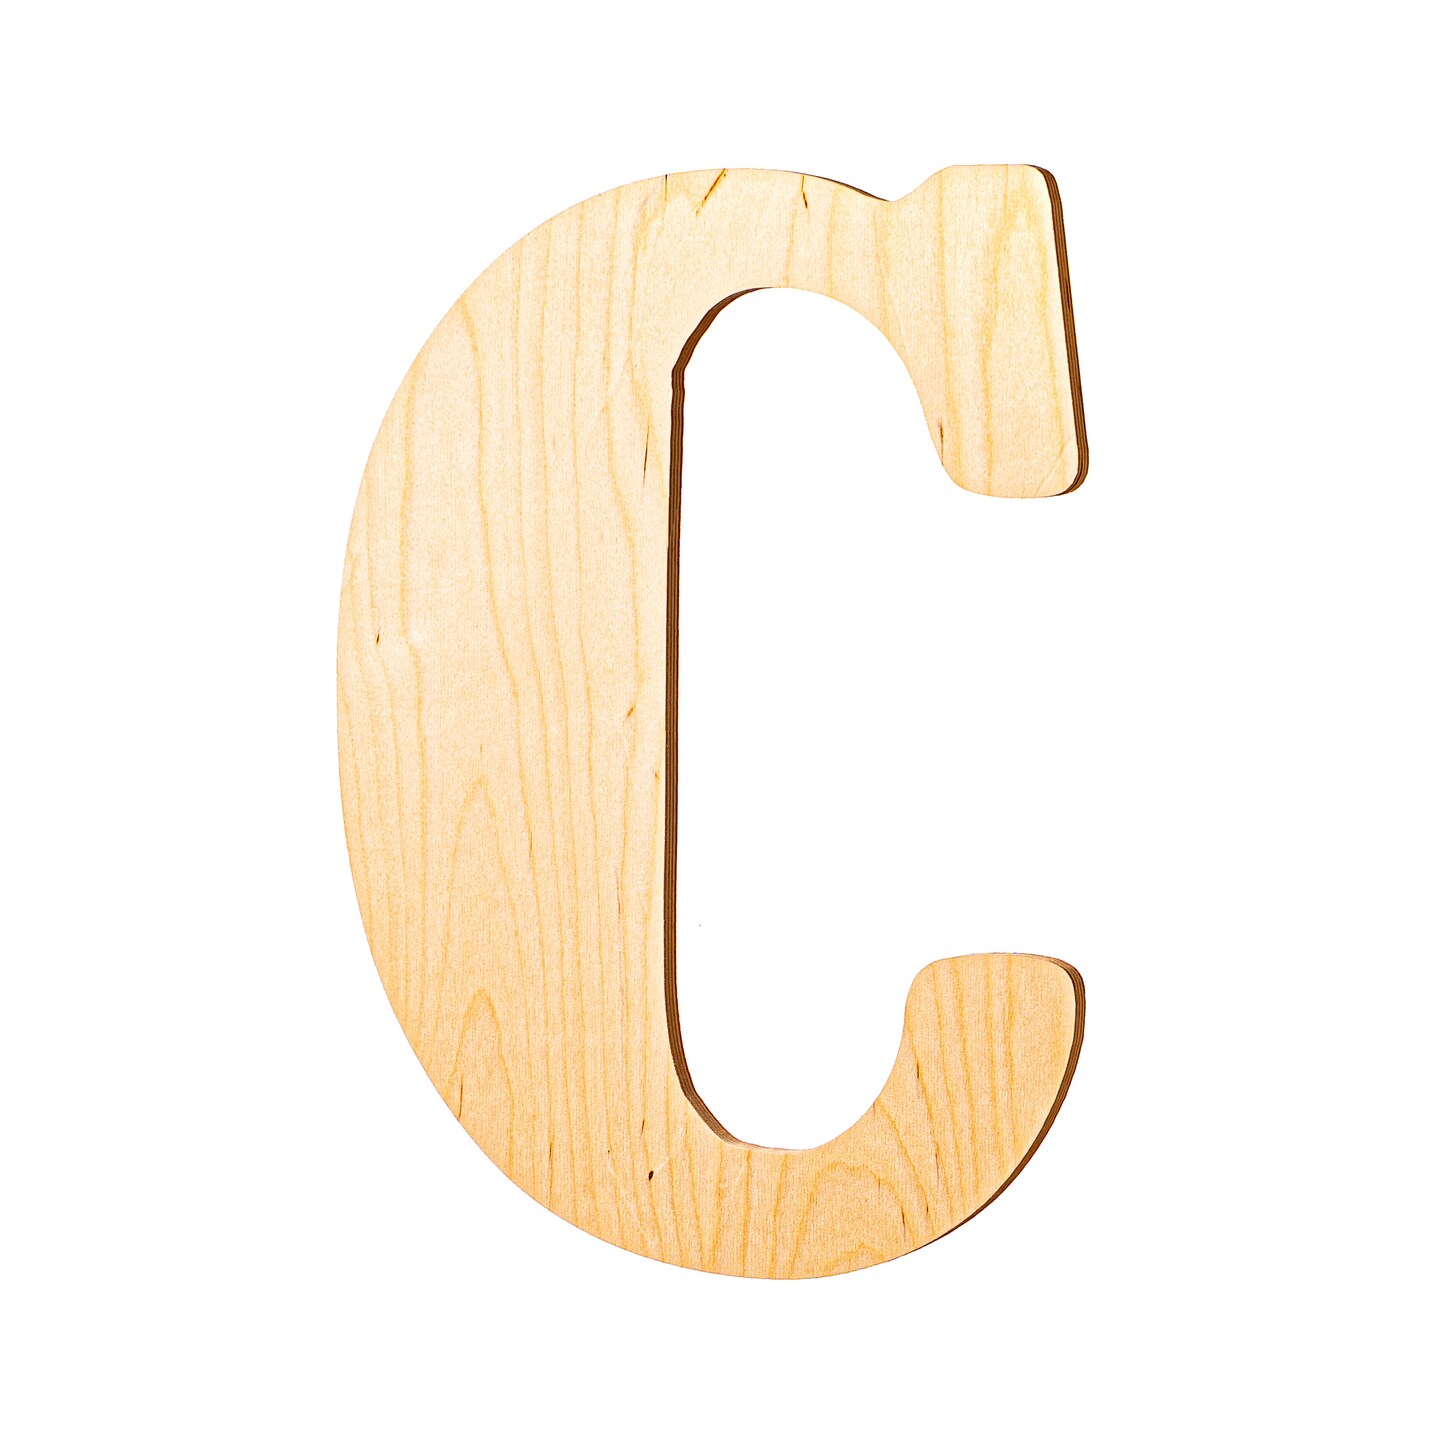 23 In. Letter C, Unfinished Vintage Wood Letter (C)